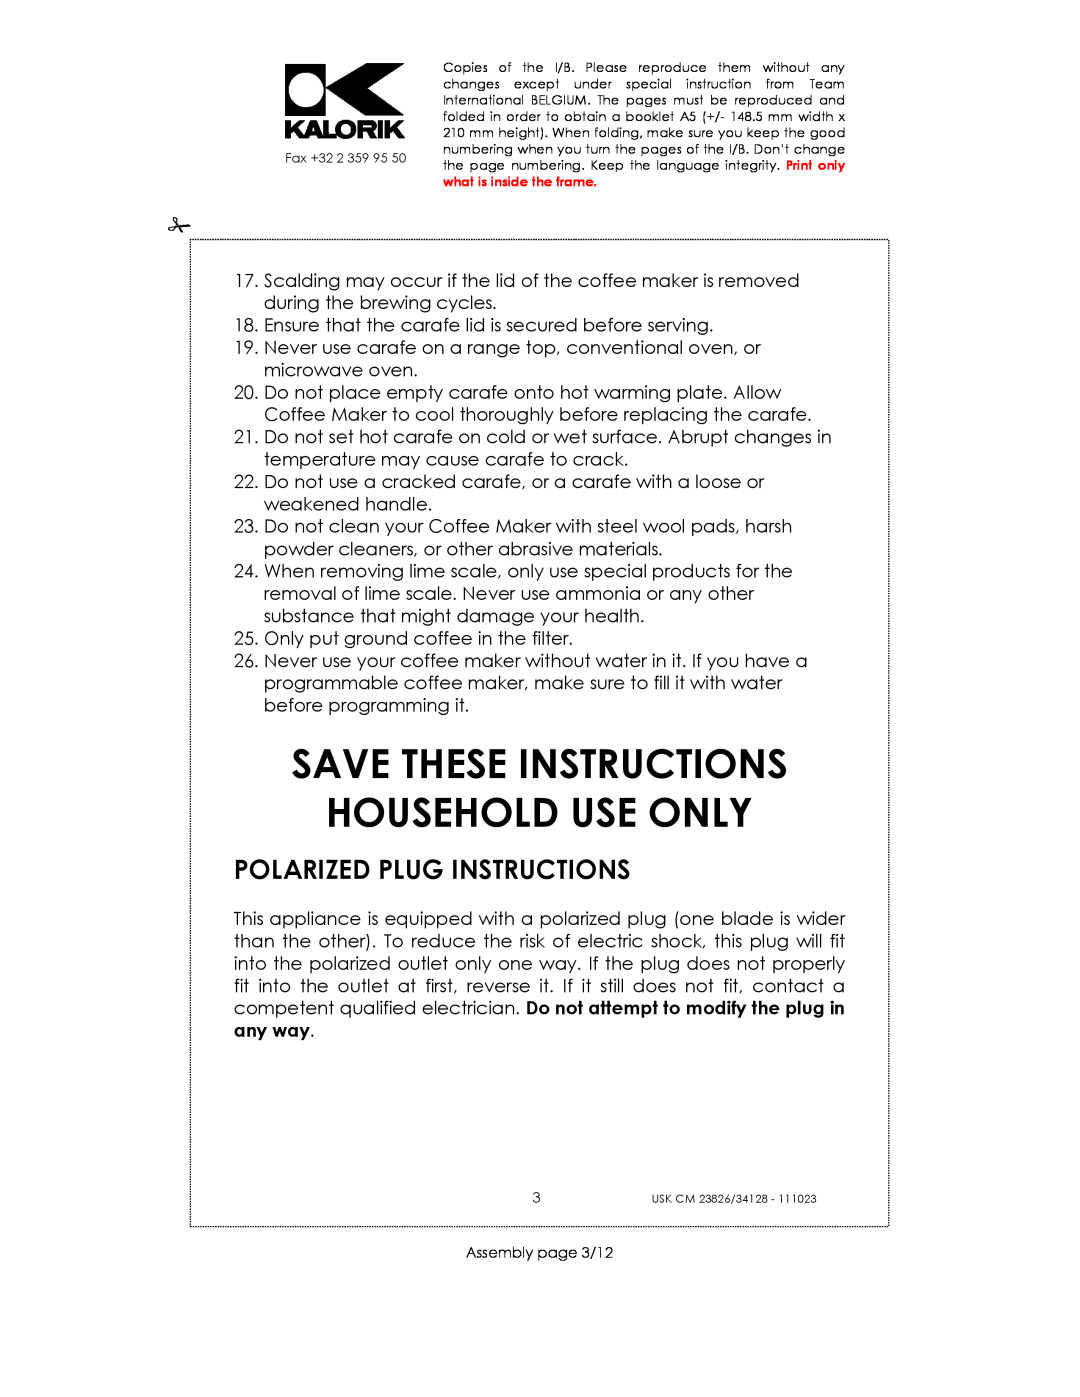 Kalorik USK CM 23826, USK CM 34128 manual Save These Instructions Household Use Only, Polarized Plug Instructions 